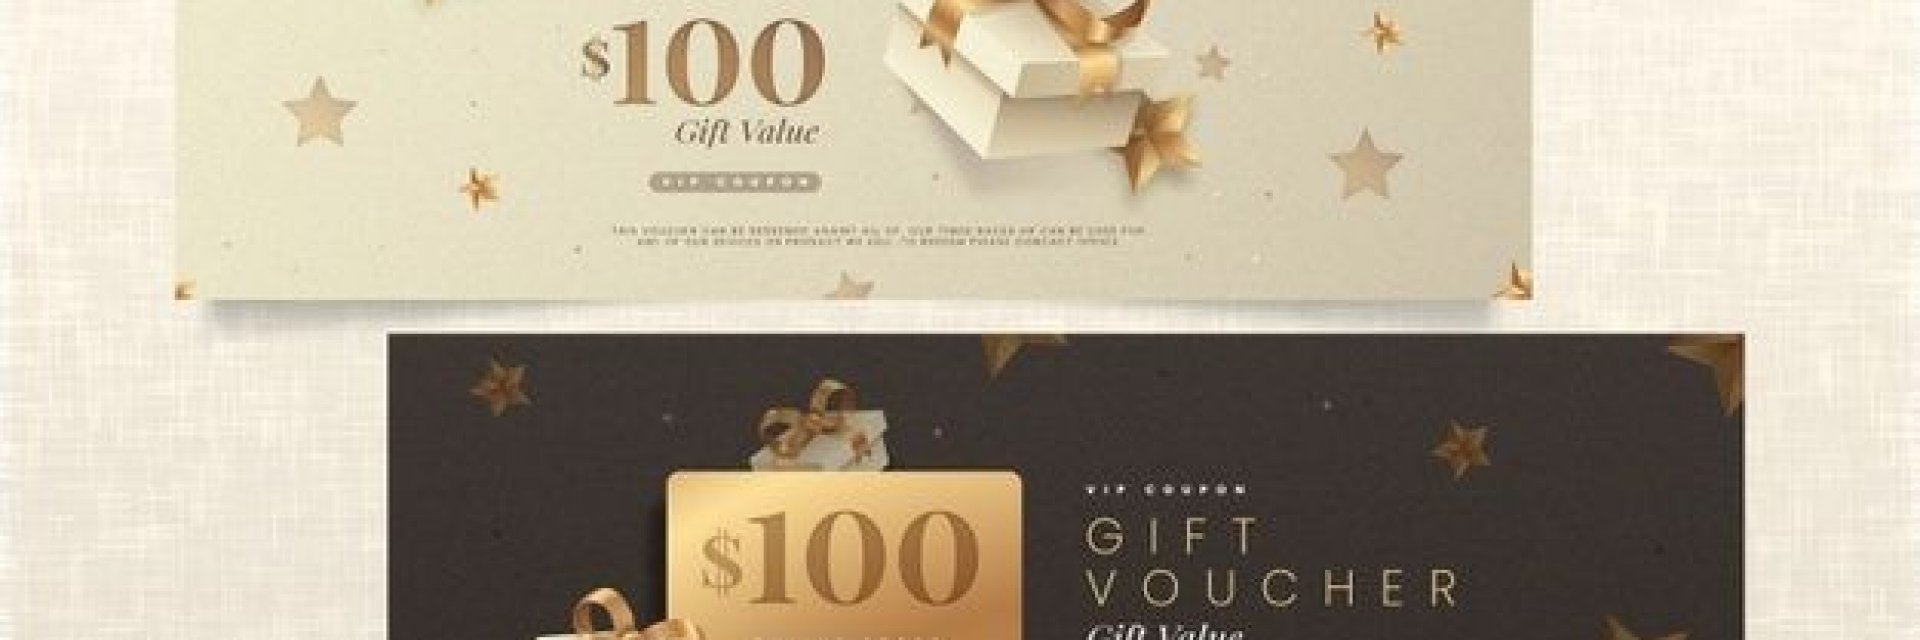 golden-gift-voucher-template-pack-52683-53664